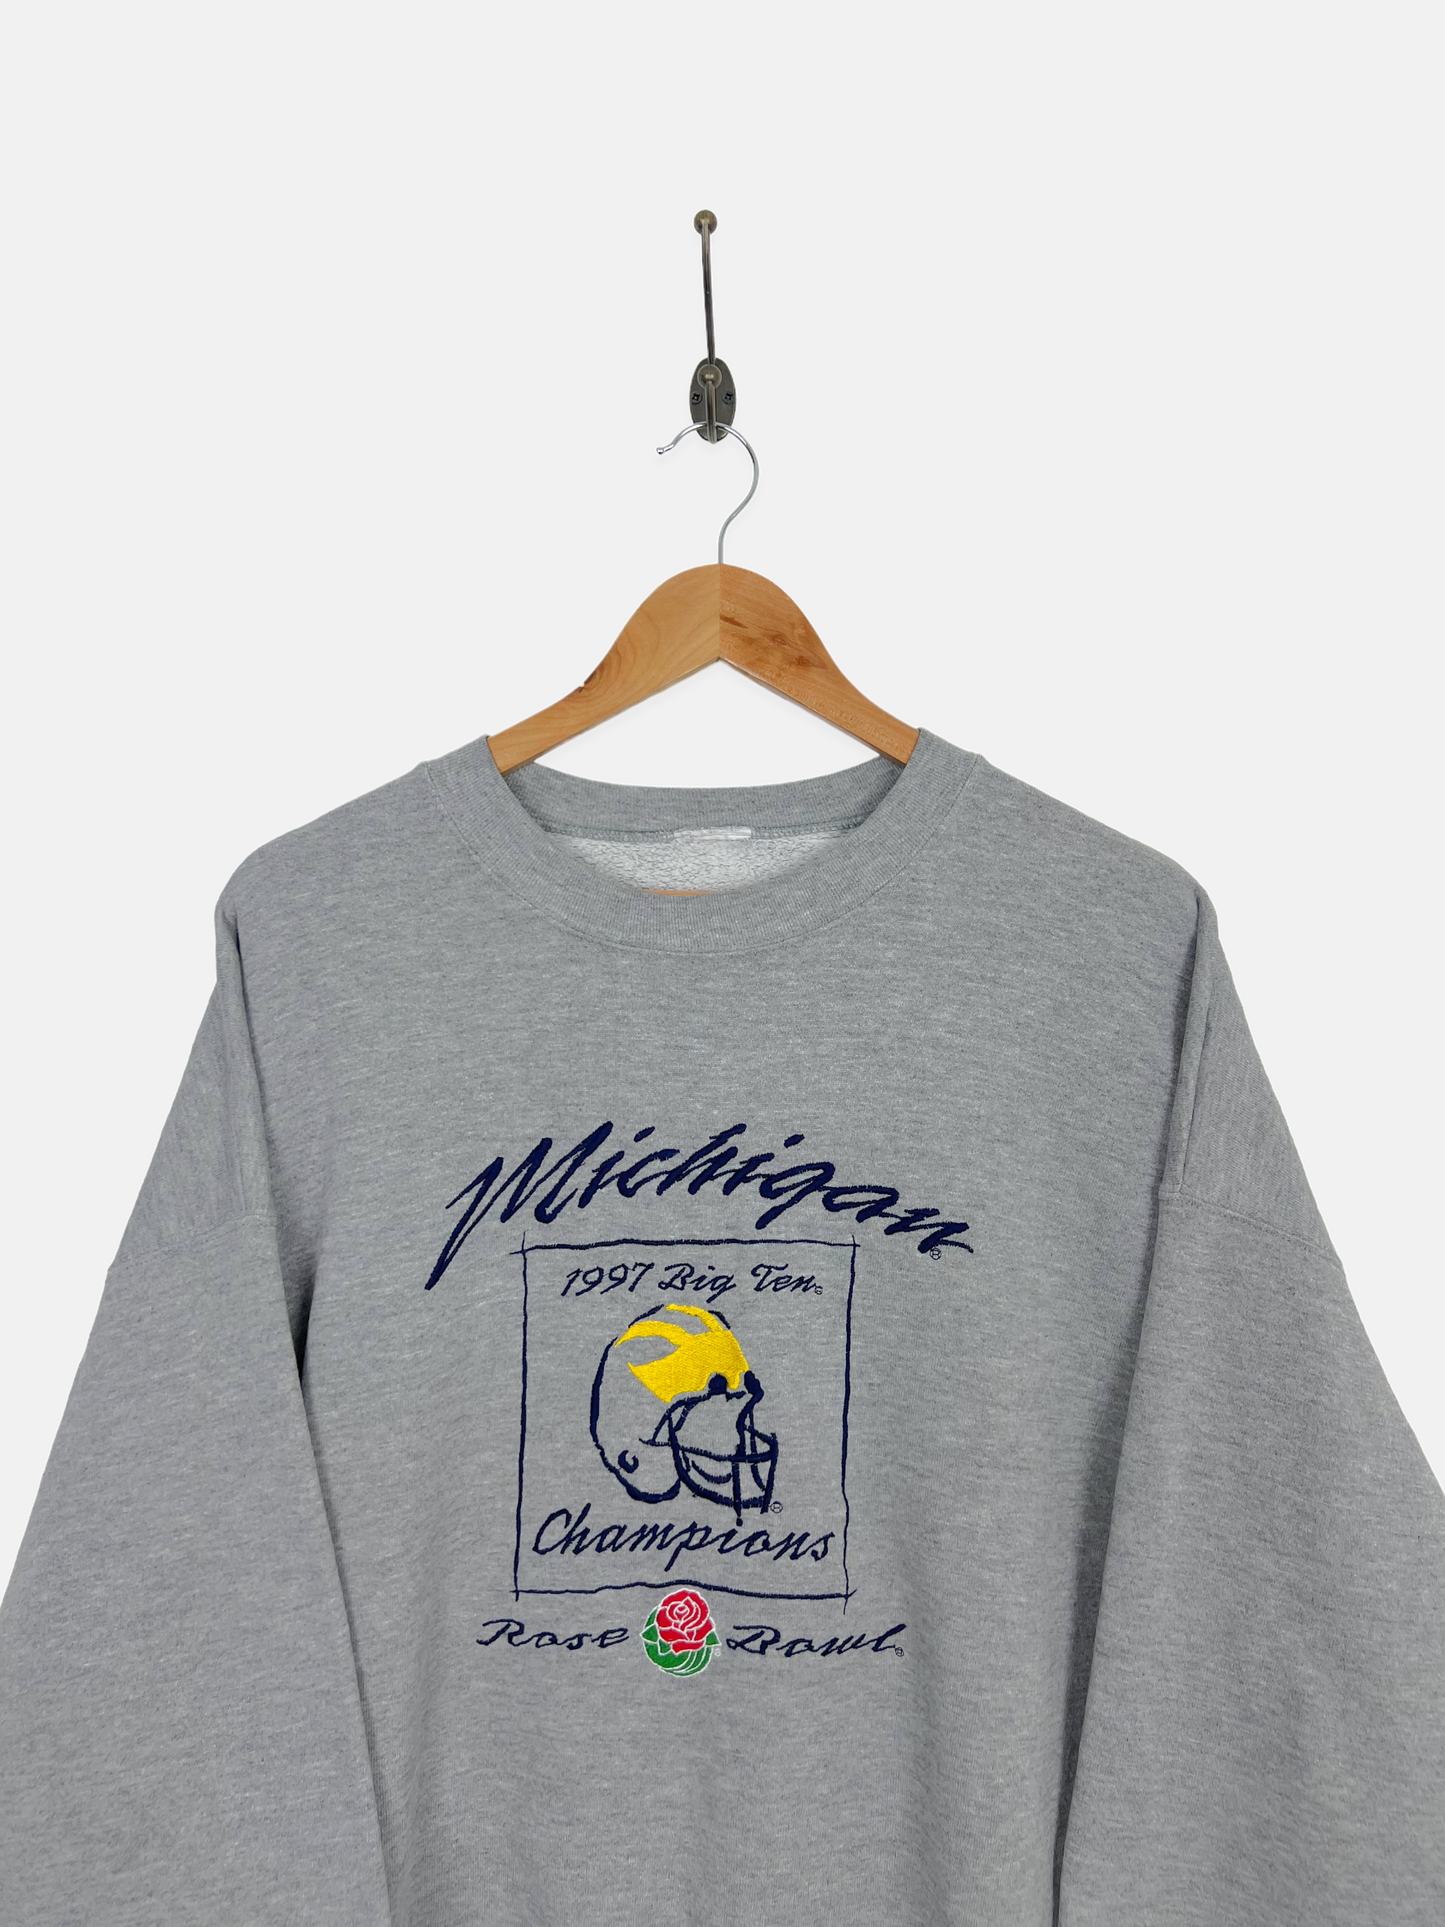 1997 Michigan Wolverines Embroidered Vintage Sweatshirt Size XL